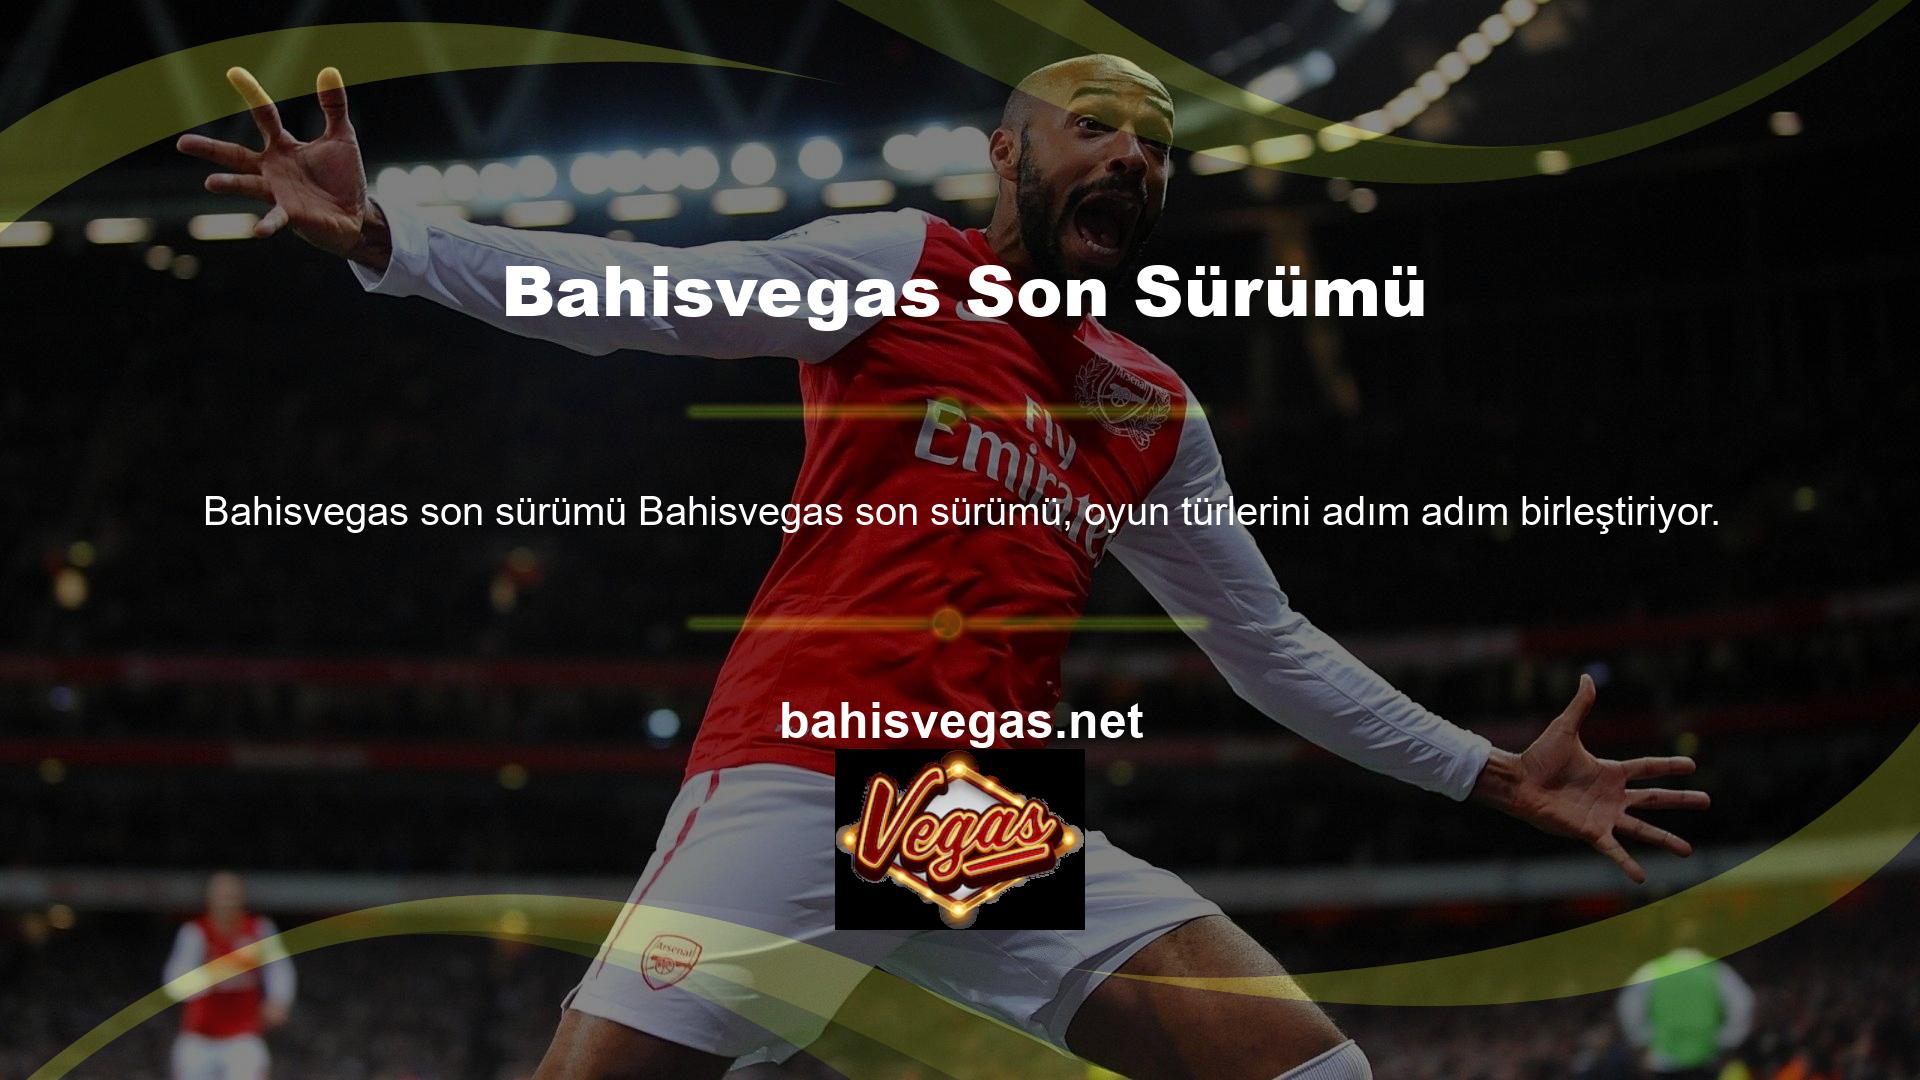 Bahisvegas web sitesi üzerinden canlı casino oyunlarına erişebilirsiniz